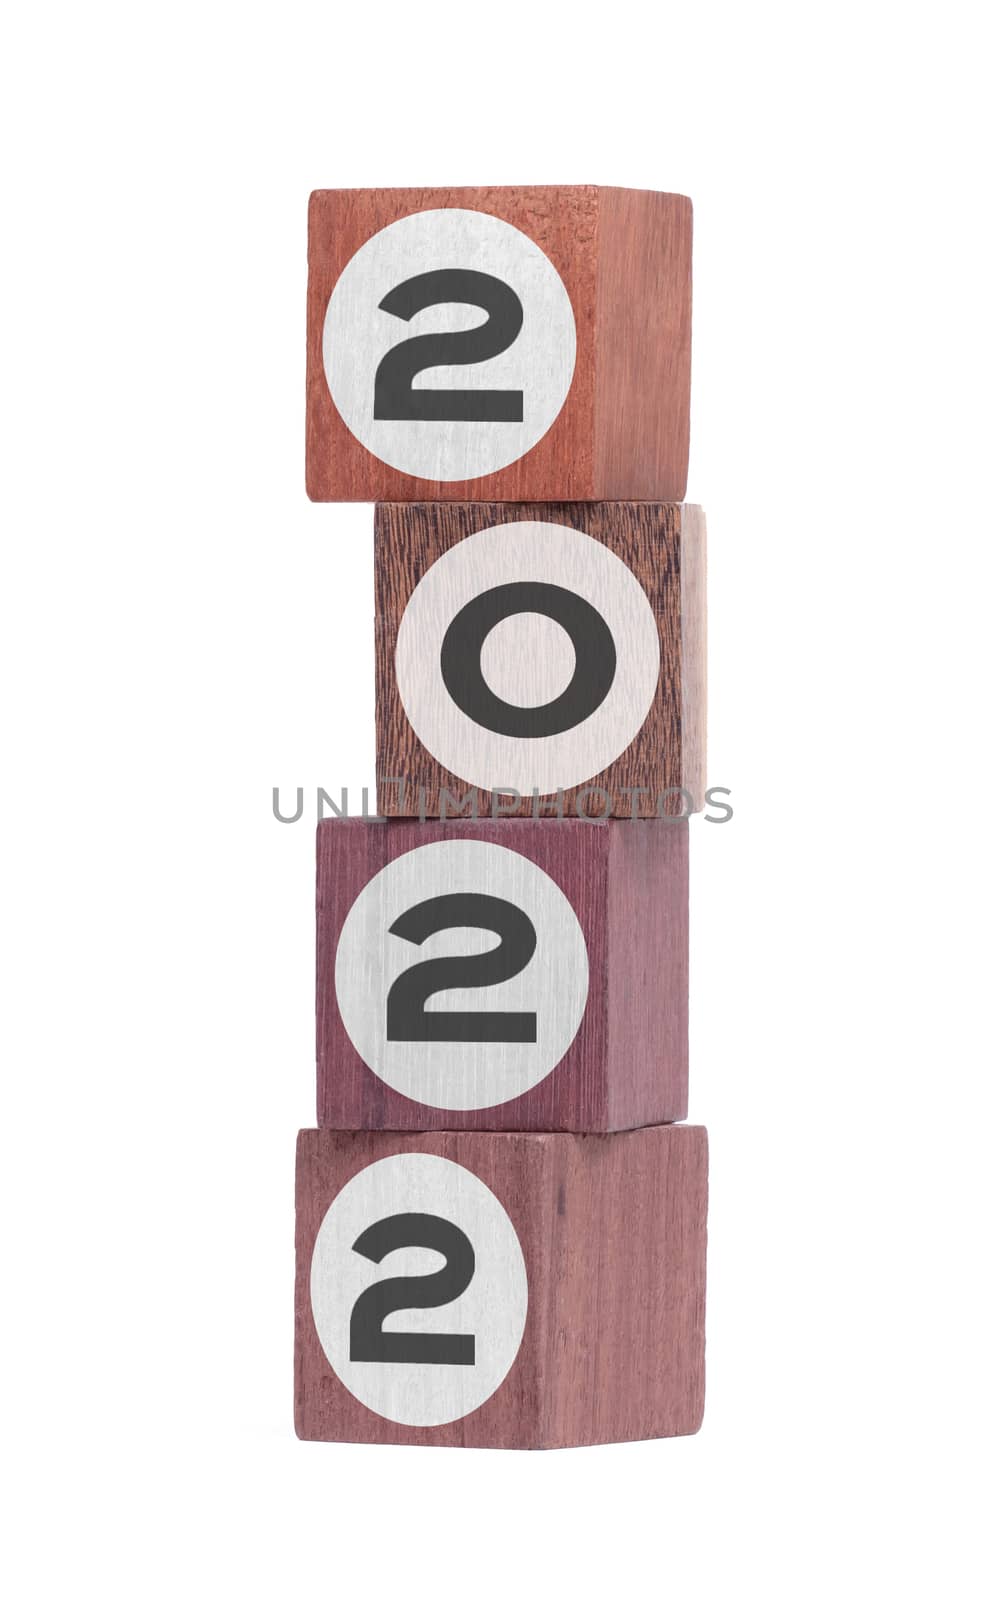 Four isolated hardwood toy blocks on white, saying 2022